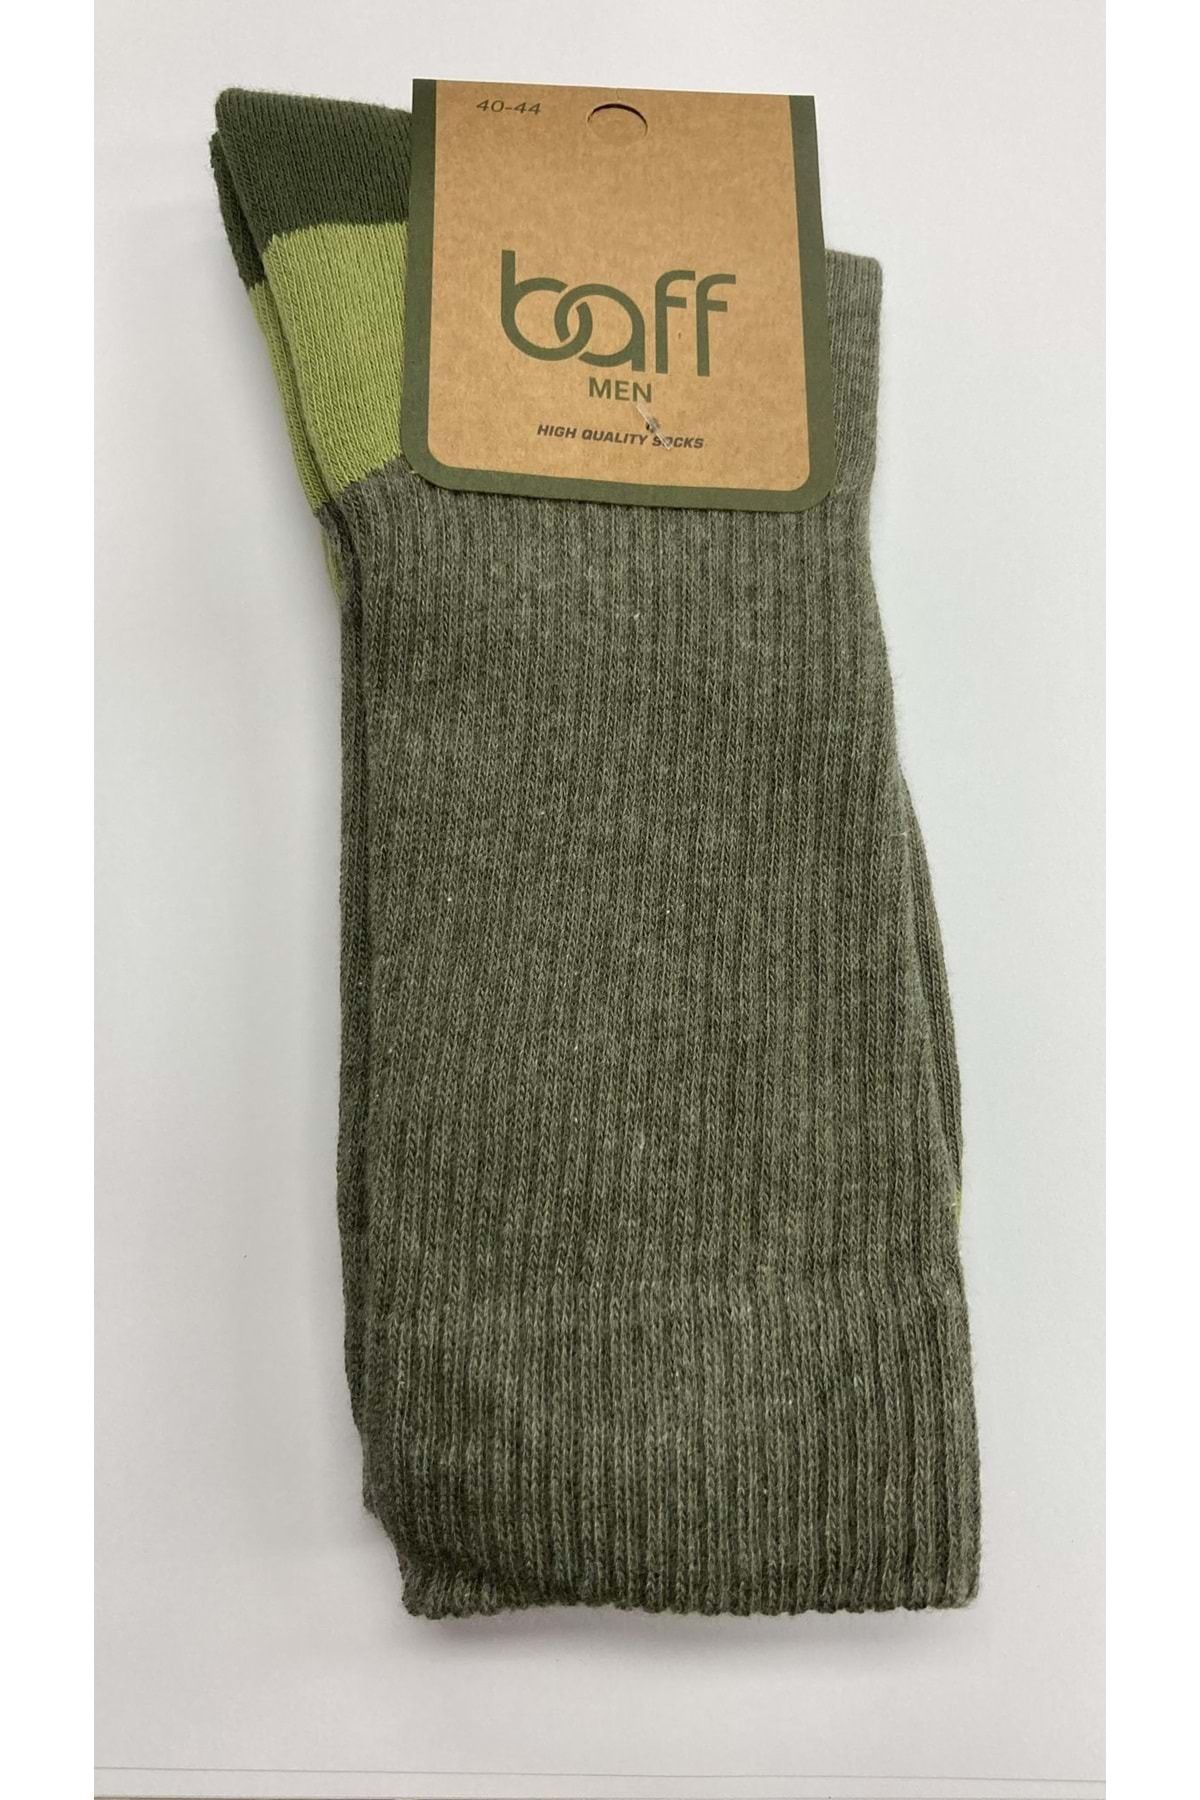 Baff Yeşil Takviyeli Outdoor Çorap (39-42) --- --- Yeşil 1çft.